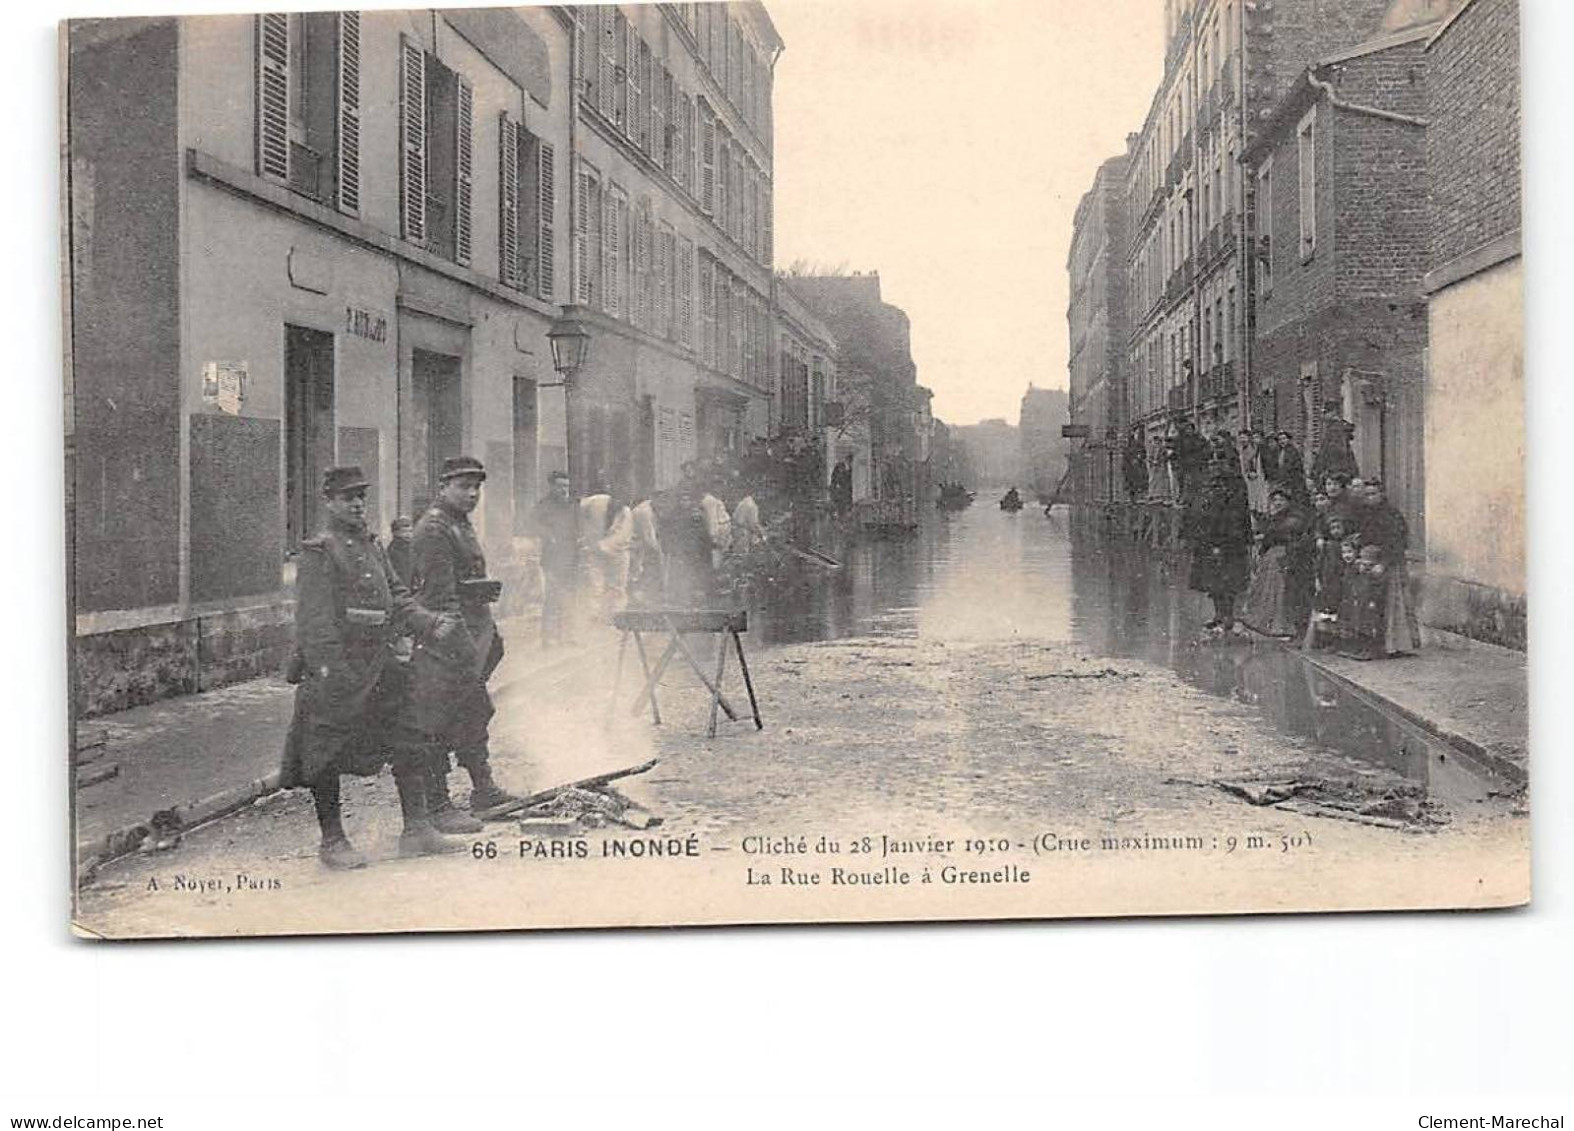 PARIS Inondé - Cliché Du 28 Janvier 1910 - La Rue Rouelle à Grenelle - Très Bon état - Paris Flood, 1910